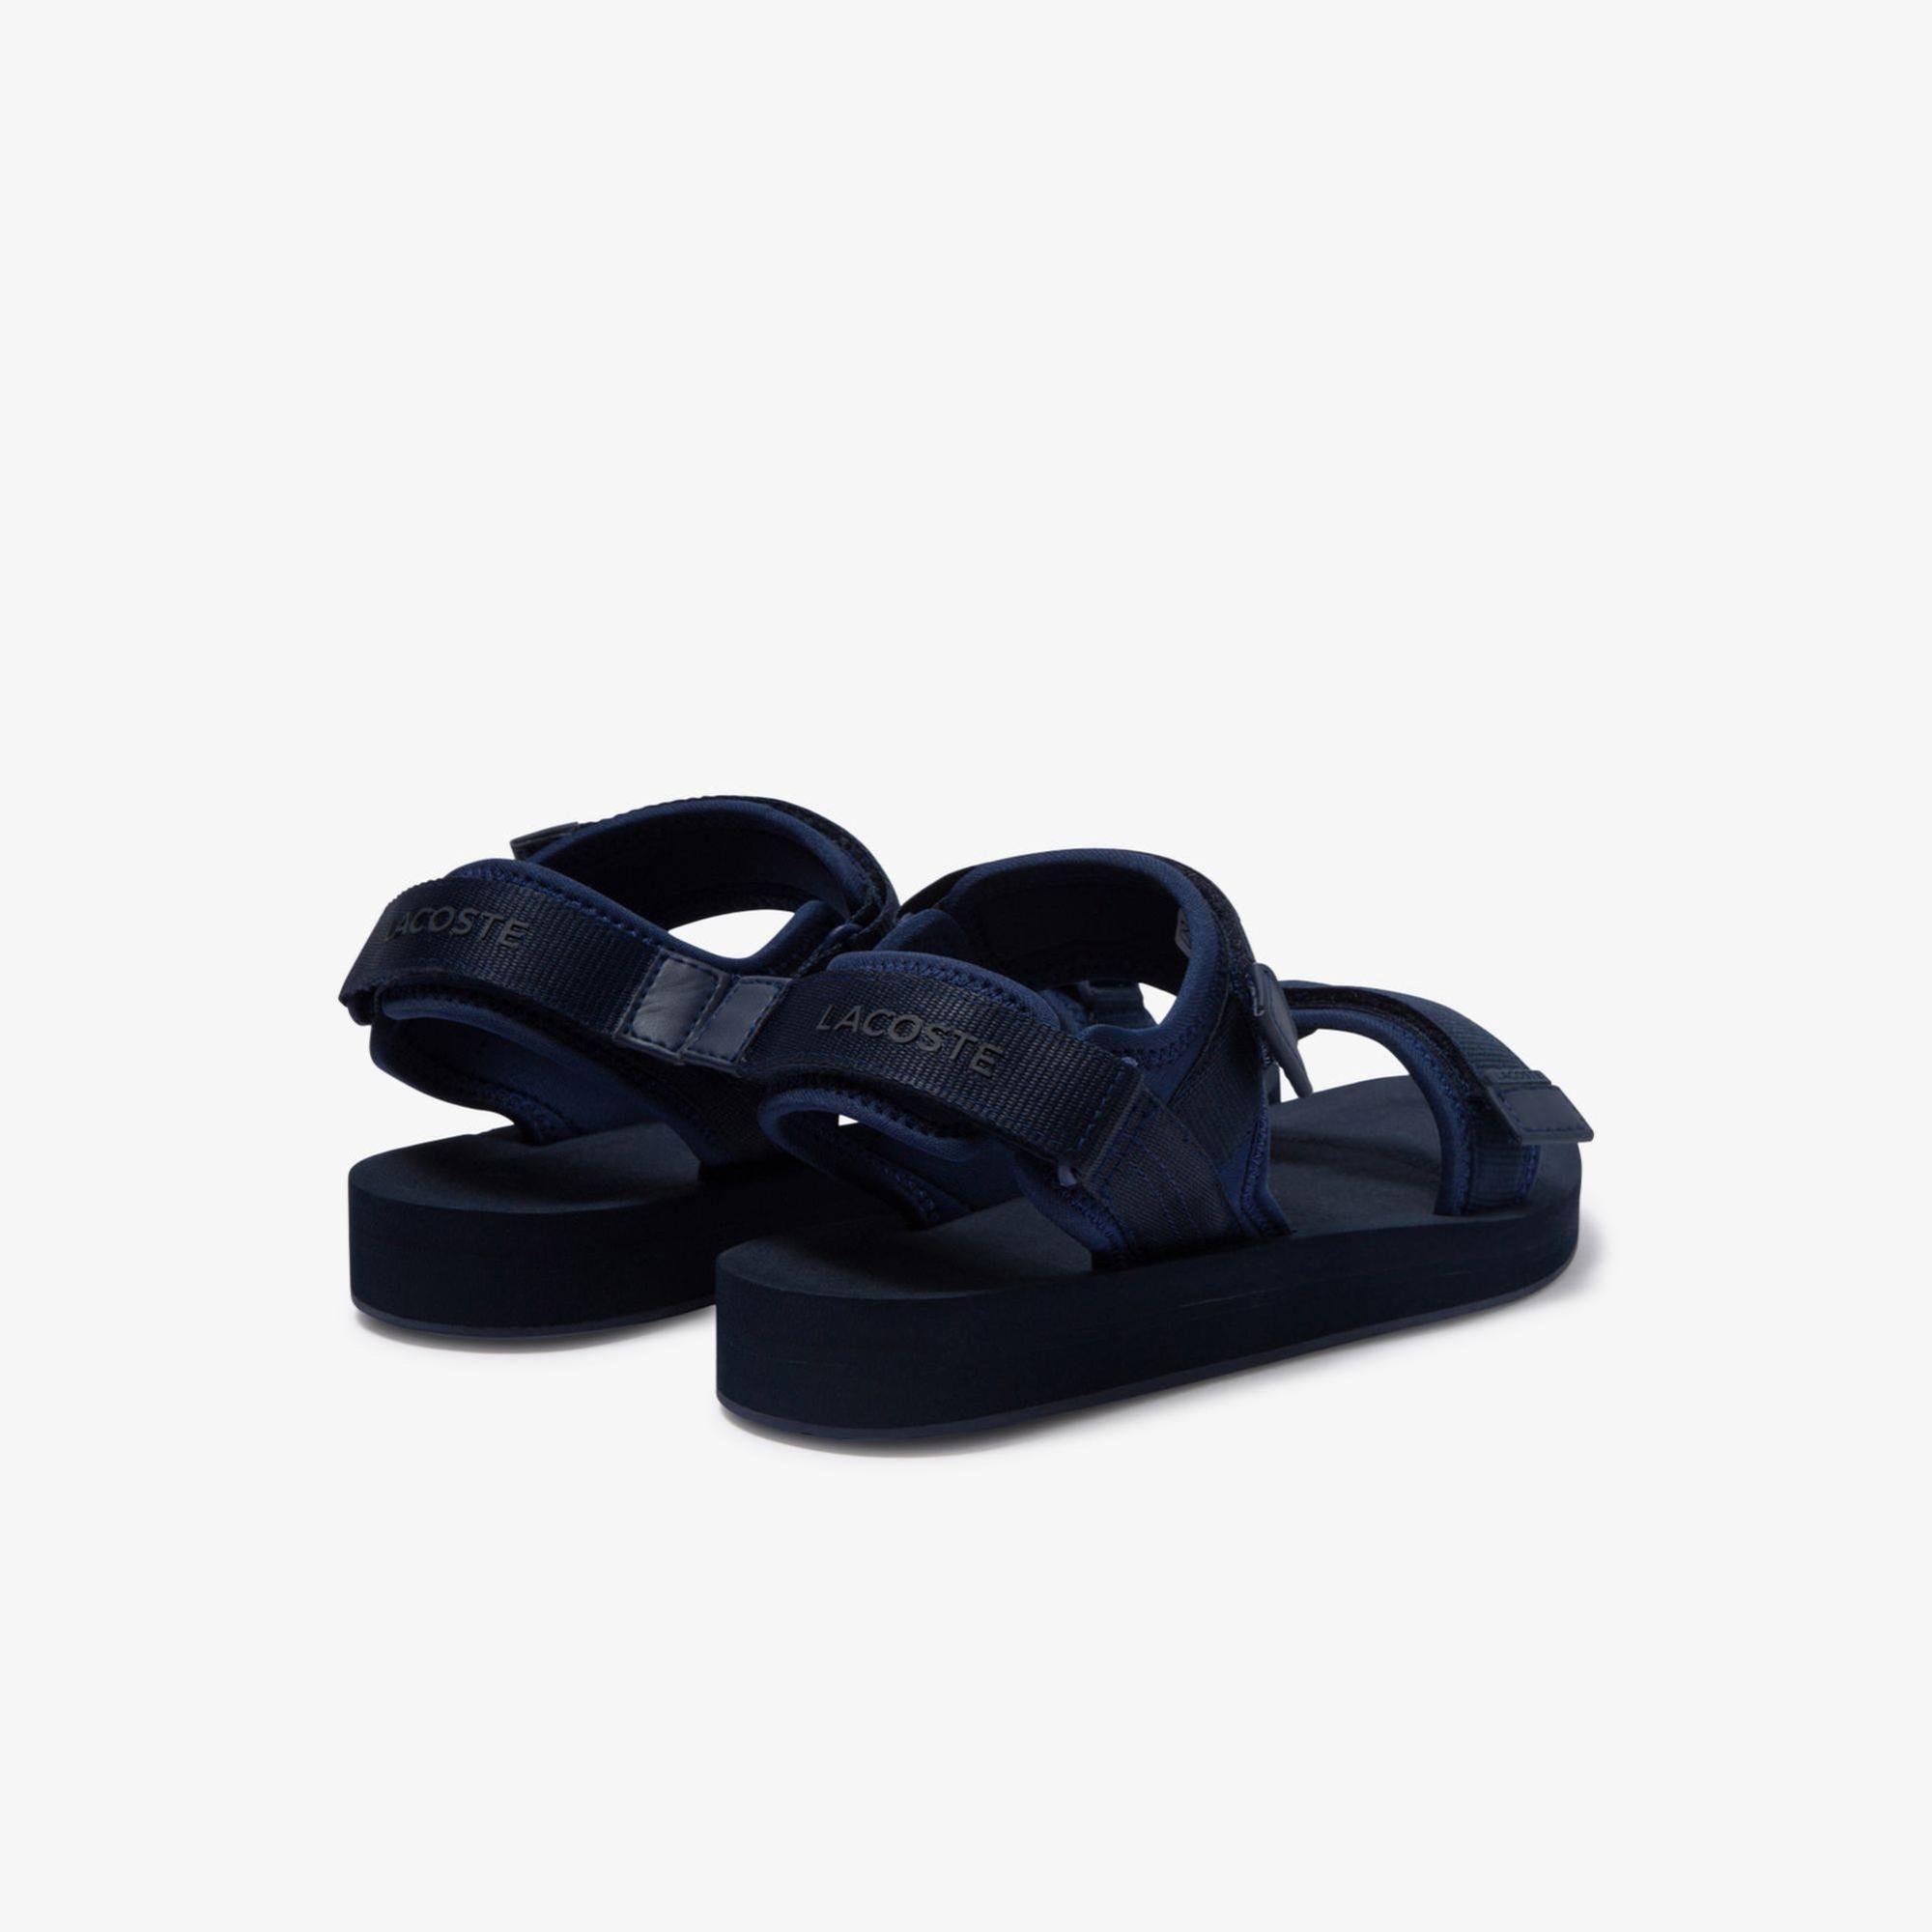 Lacoste Men's Suruga Textile Sandals